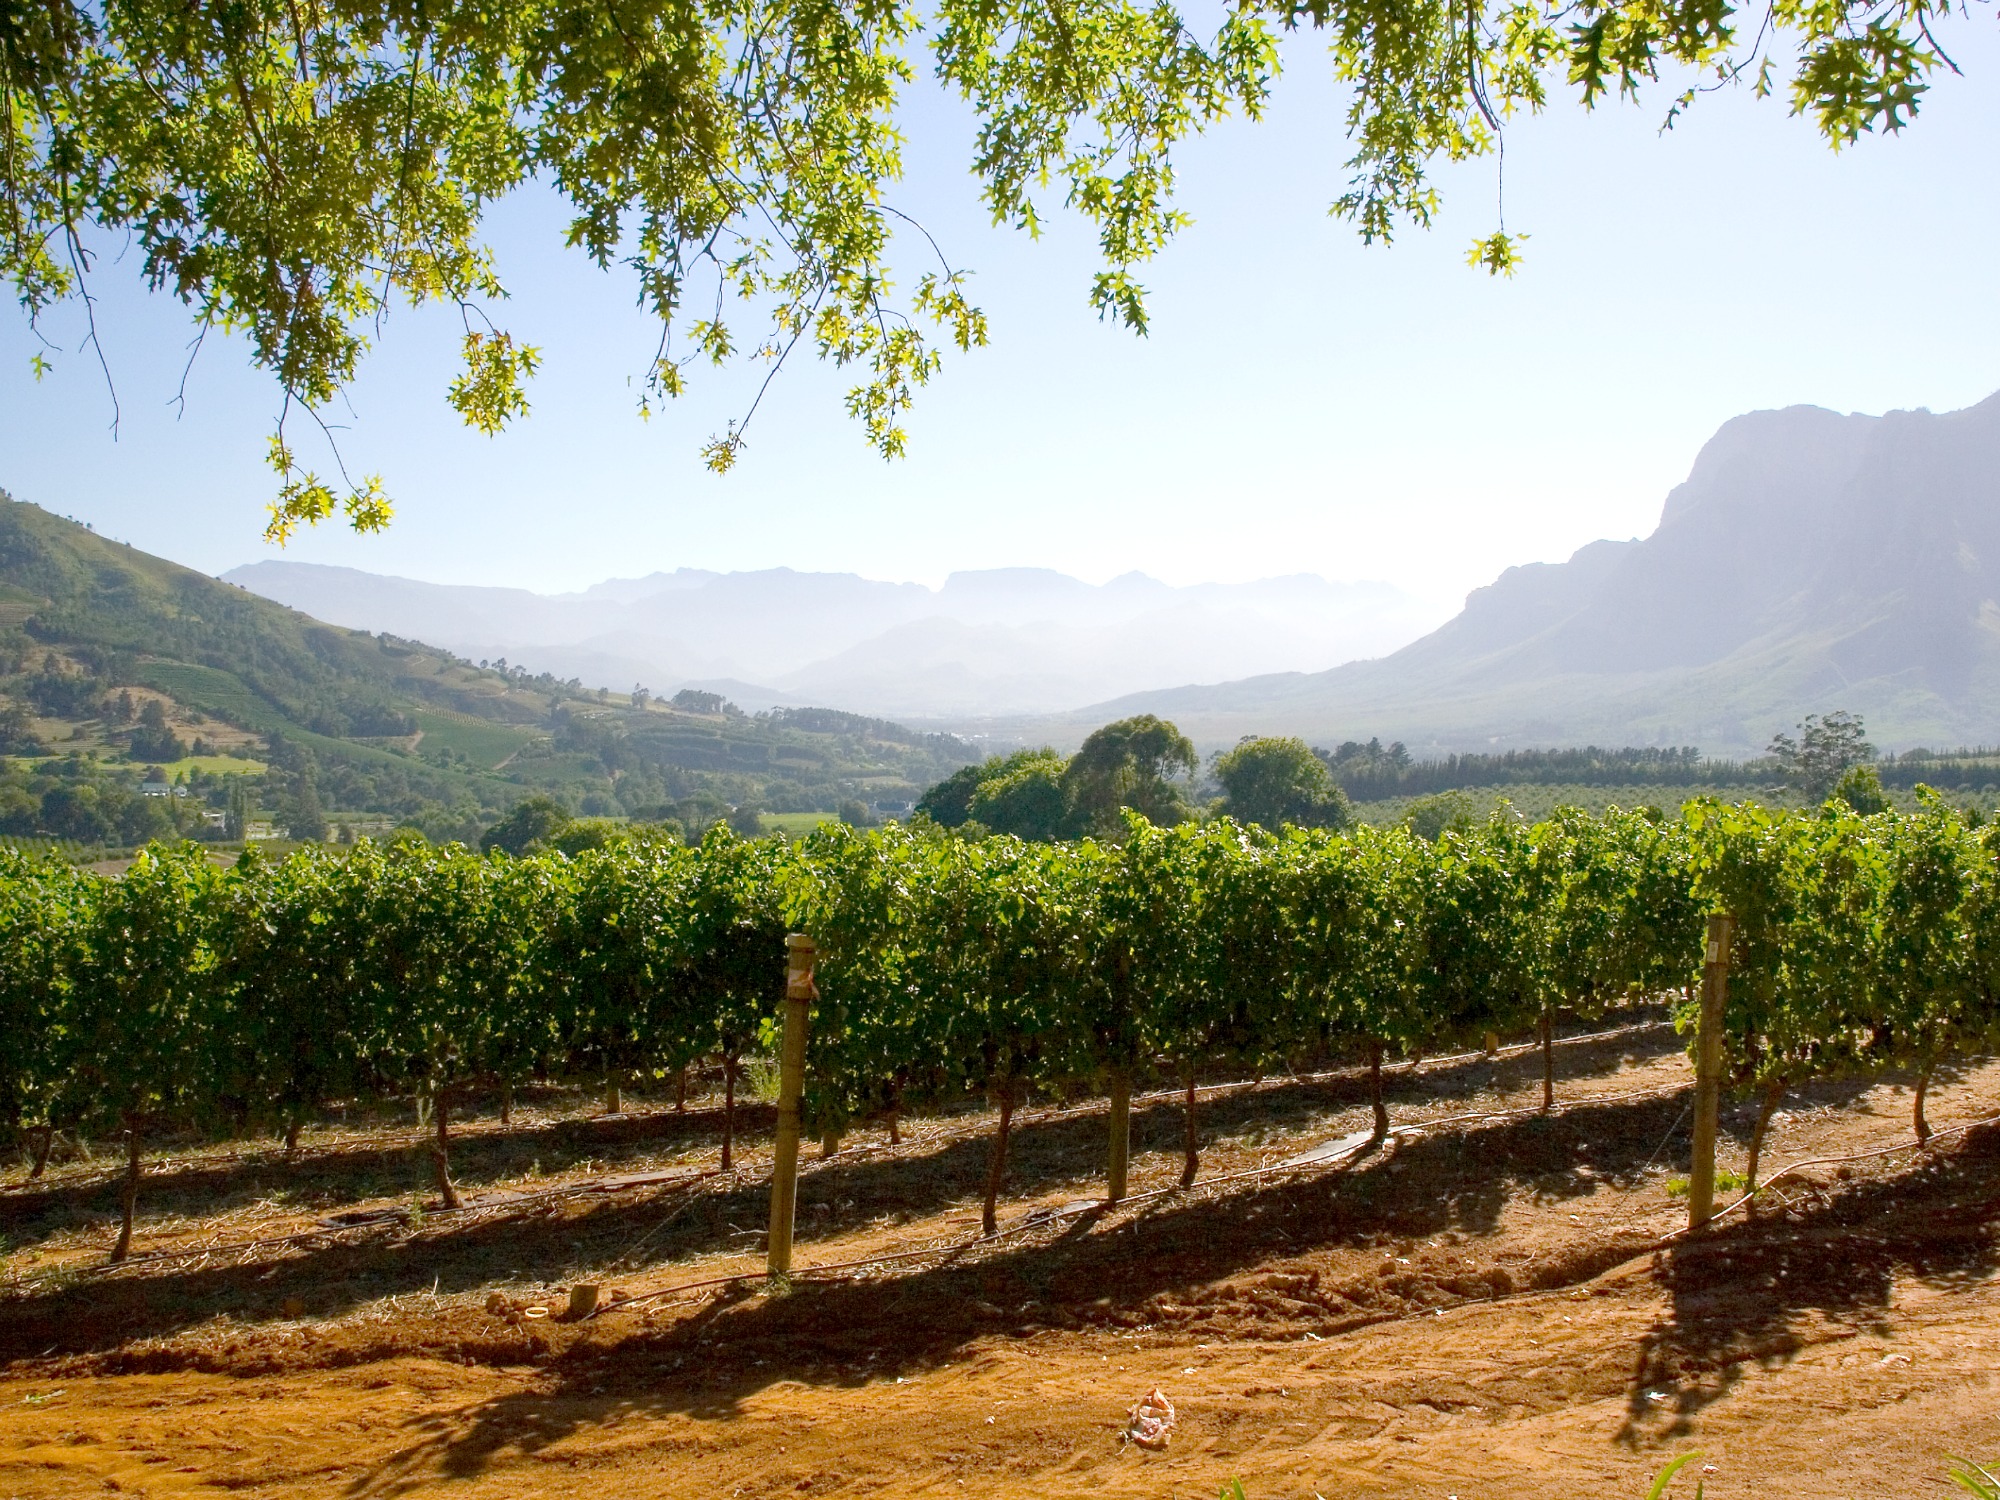 Zuid-Afrika bucketlist - Stellenbosch wijnranken